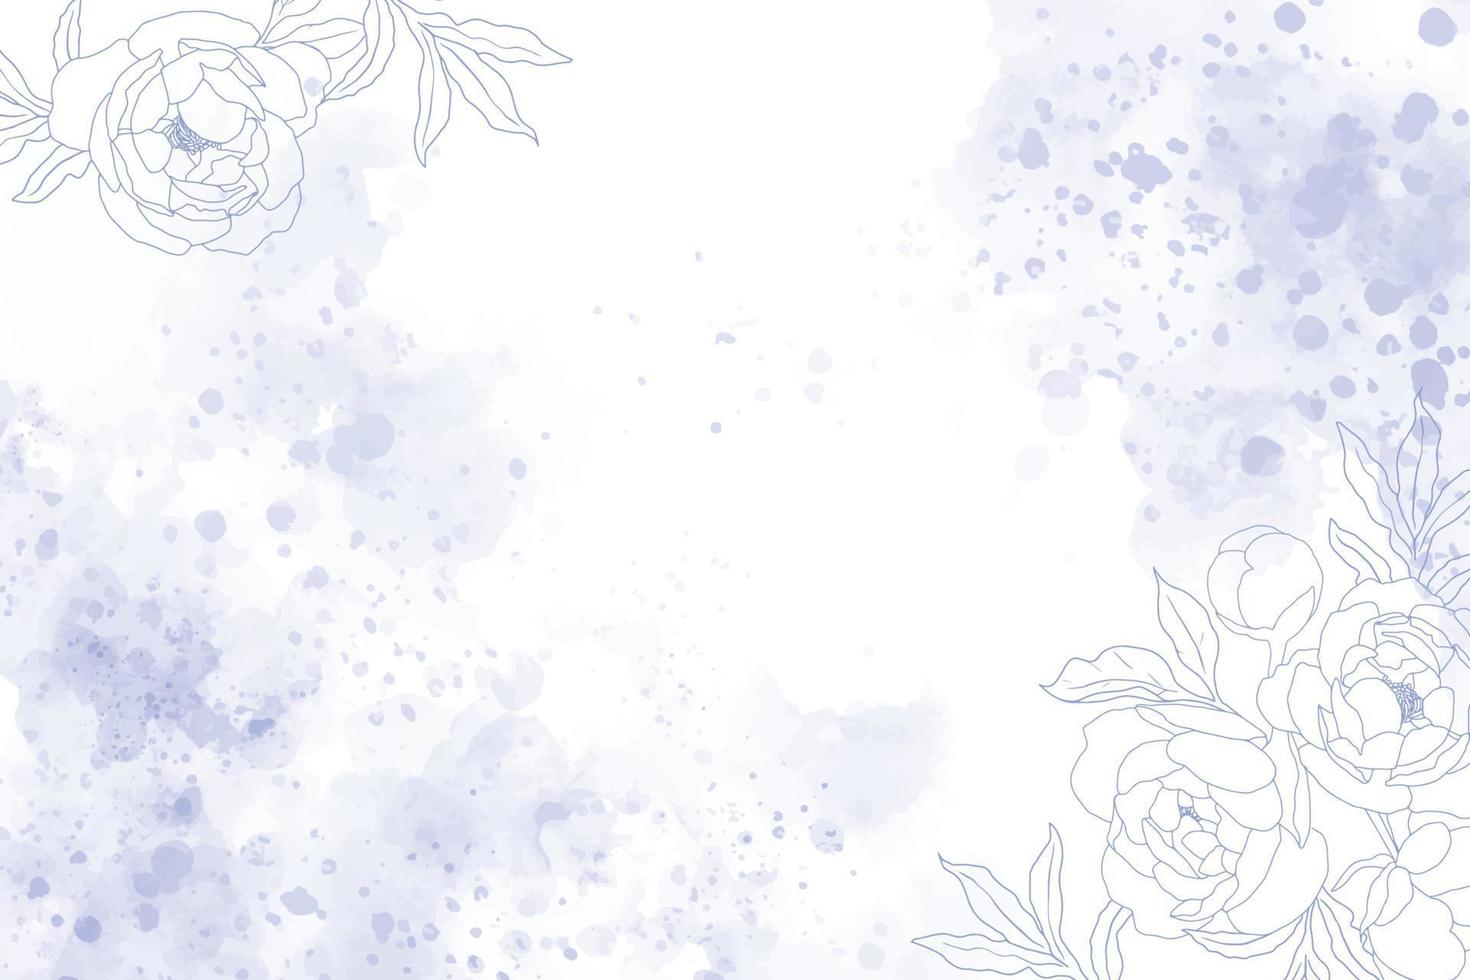 sfondo splash blu indaco acquerello con fiore di peonia bianco doodle line art vettore